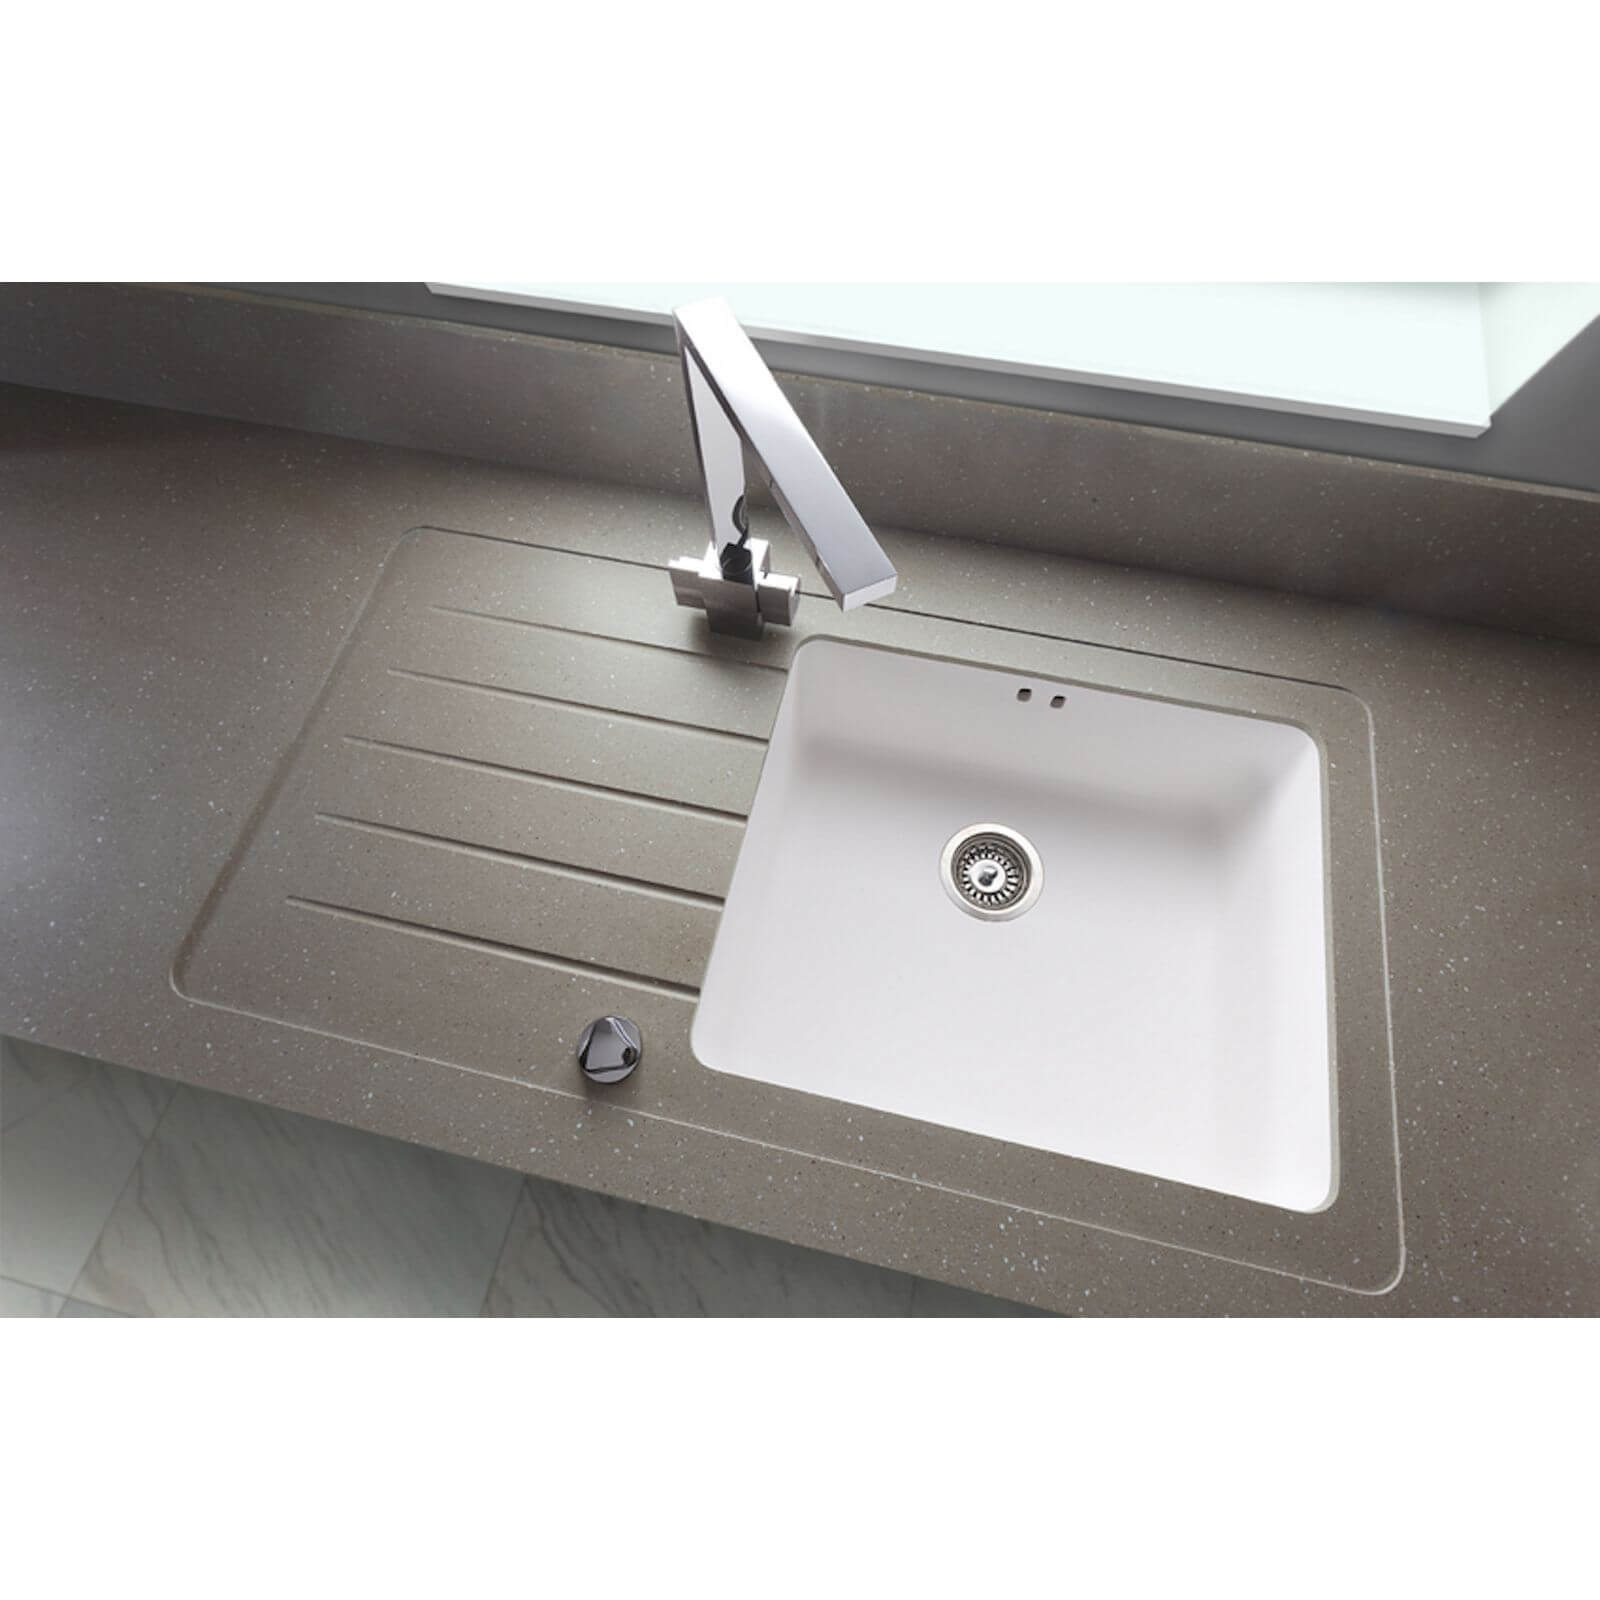 Maia Brazilian Greige Kitchen Sink Worktop - 1.5 Designer Left Hand Bowl - 1800 x 605 x 28mm